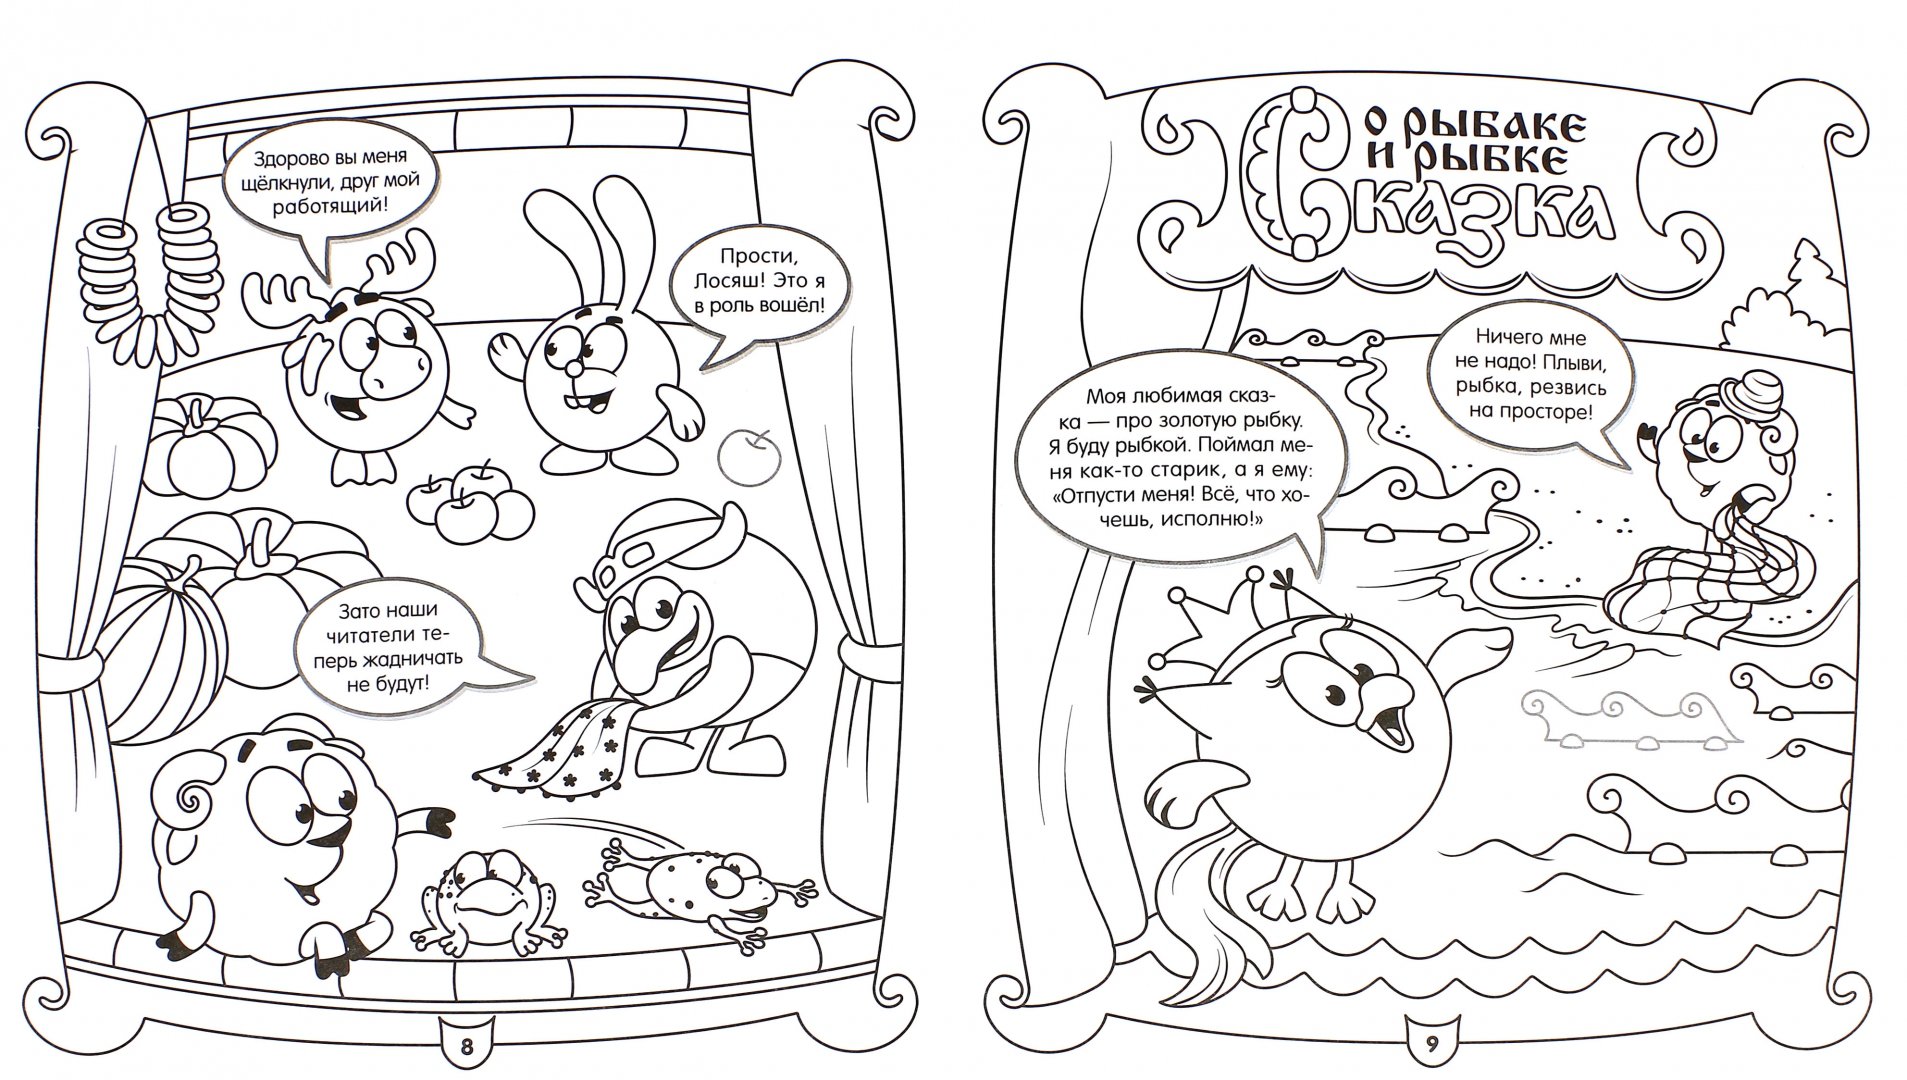 Иллюстрация 1 из 6 для Смешарики. Сказка о попе. Наклей, дорисуй, раскрась (№1427) | Лабиринт - книги. Источник: Лабиринт